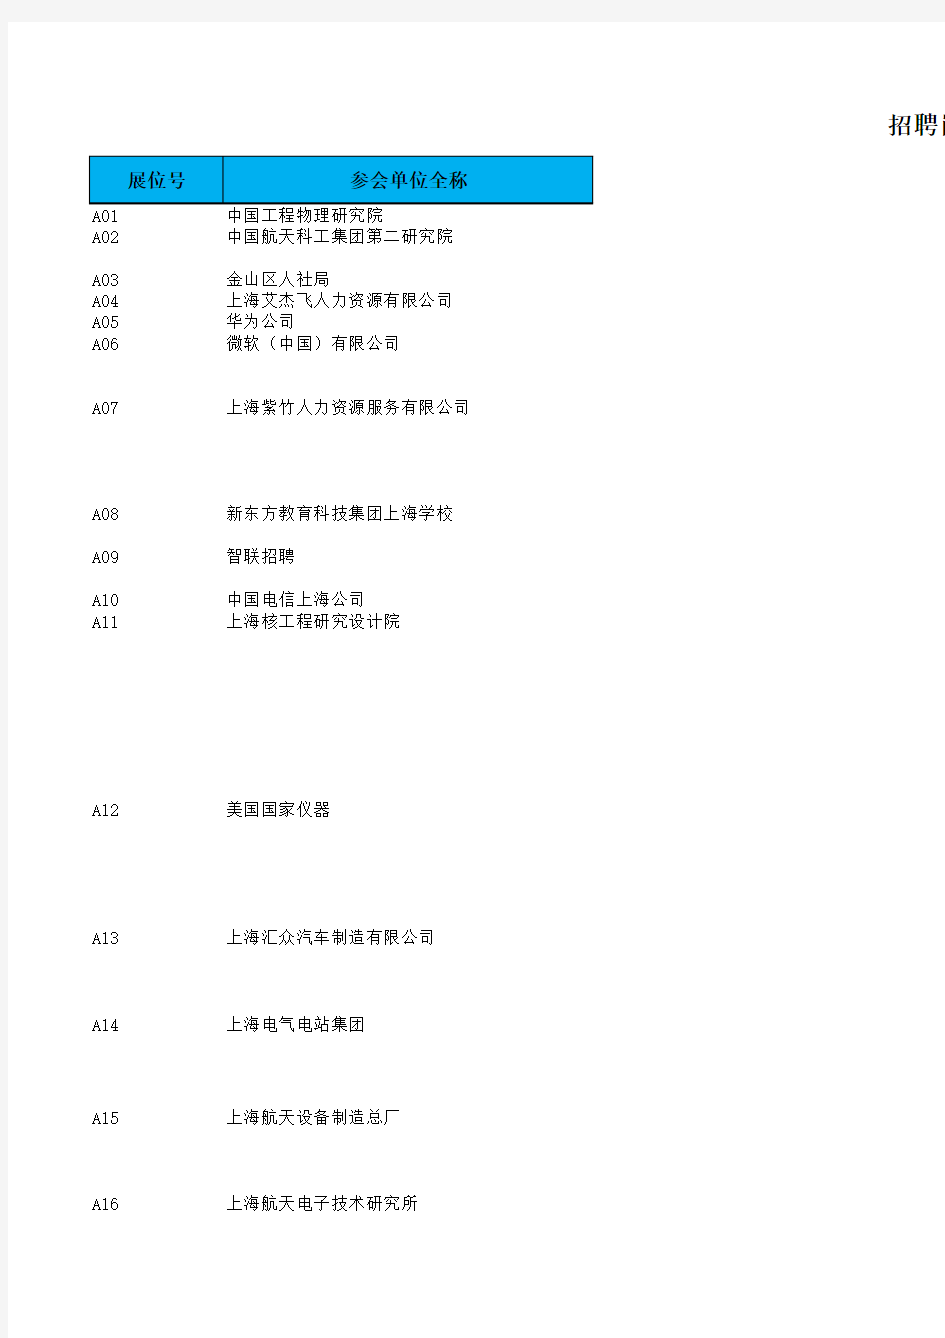 上海交通大学2015年暑期实习生招聘会暨应届生补招双选会岗位列表(发布)